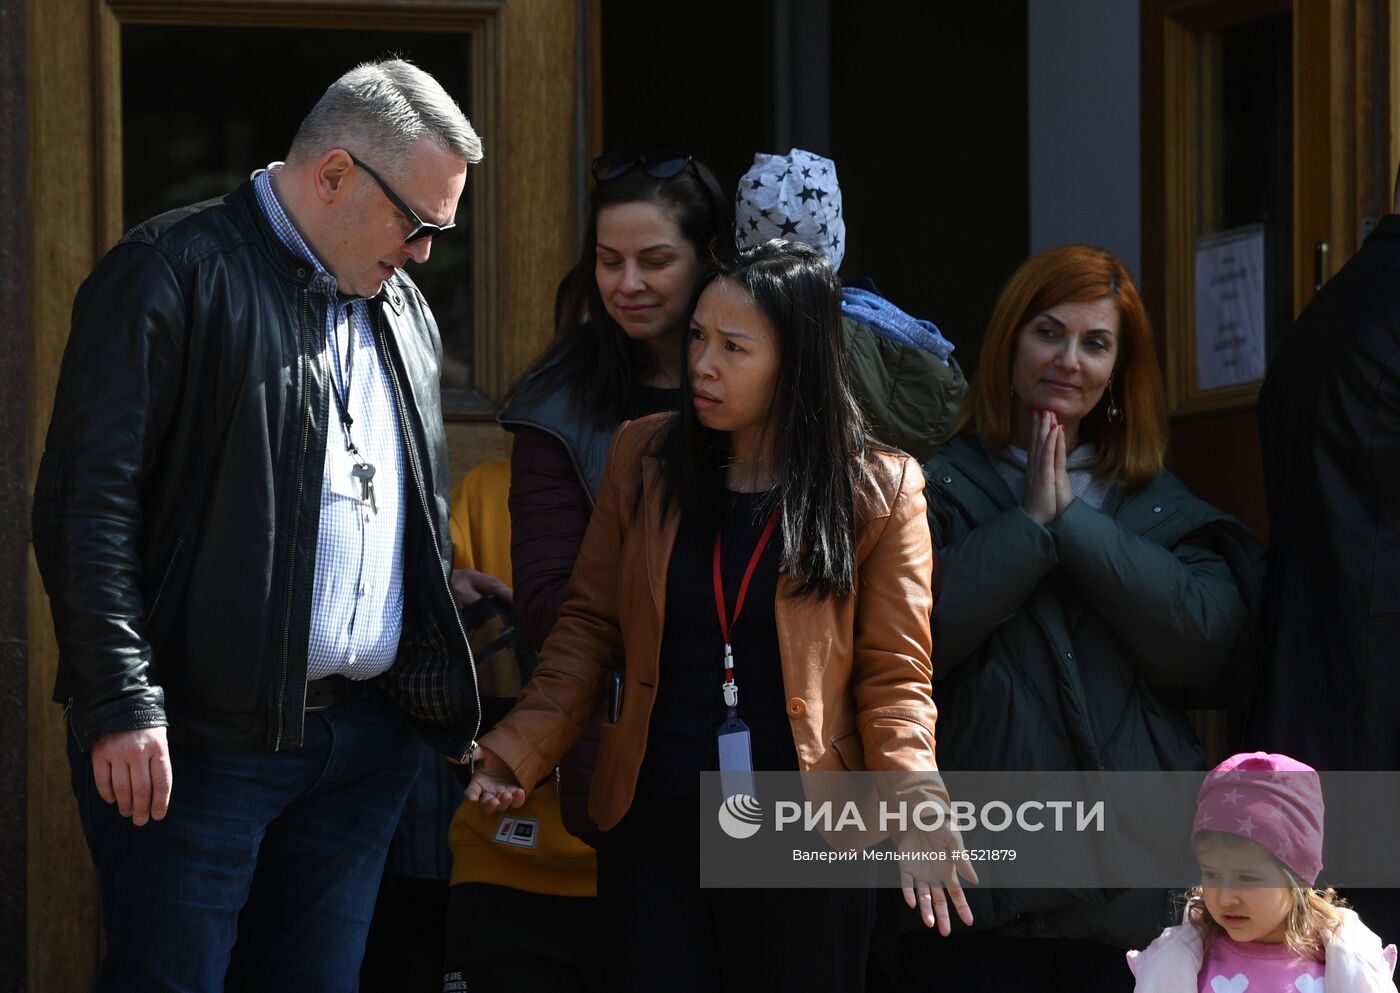 20 сотрудников посольства Чехии в РФ объявлены персонами нон грата